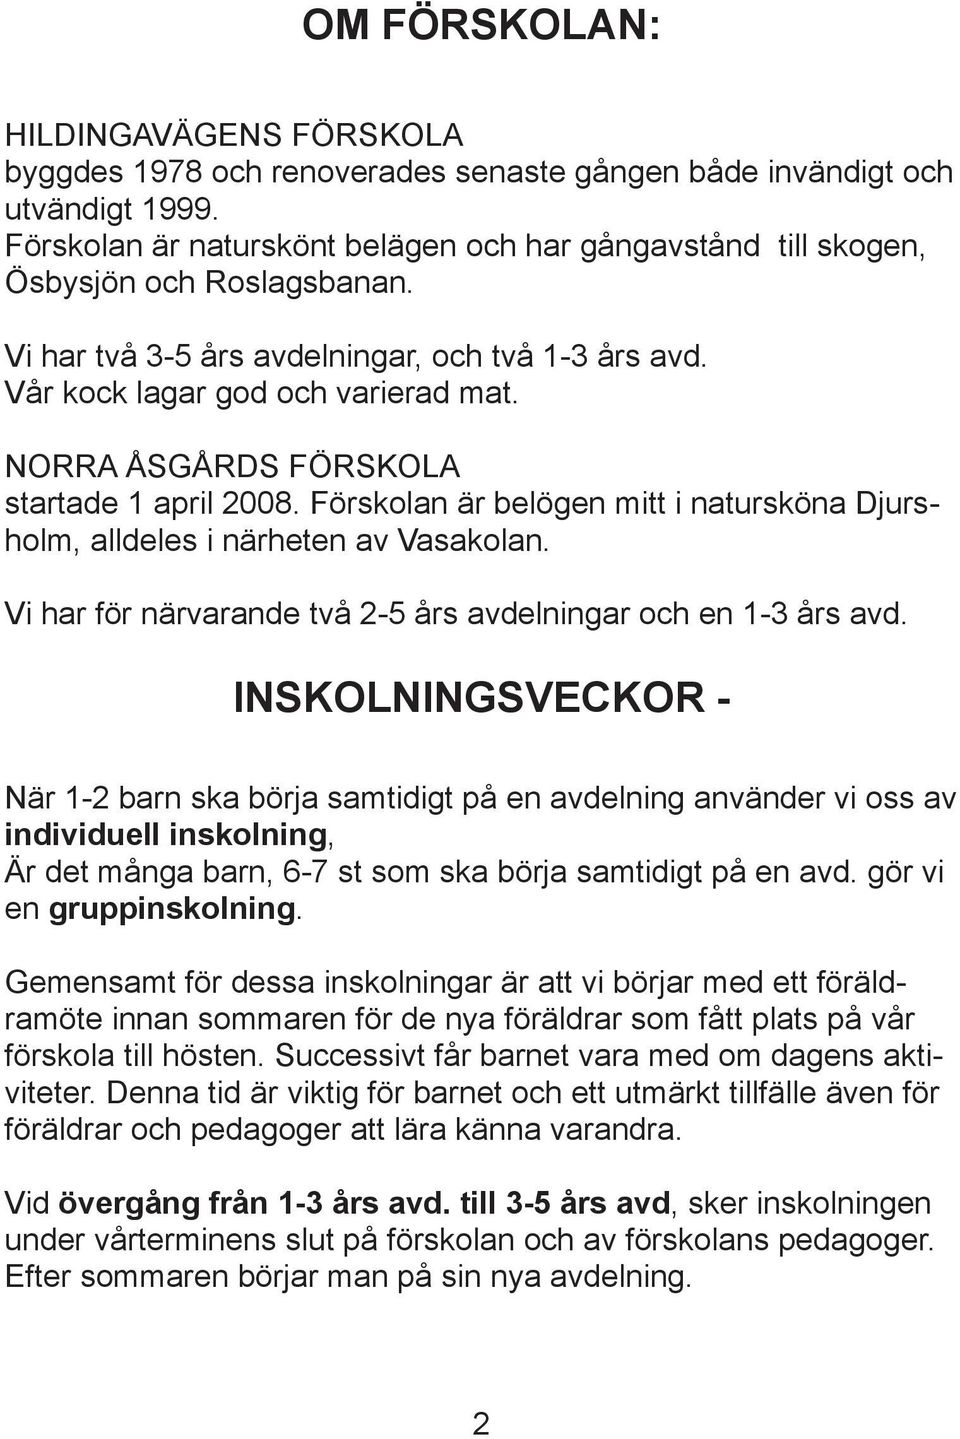 NORRA ÅSGÅRDS FÖRSKOLA startade 1 april 2008. Förskolan är belögen mitt i natursköna Djursholm, alldeles i närheten av Vasakolan. Vi har för närvarande två 2-5 års avdelningar och en 1-3 års avd.